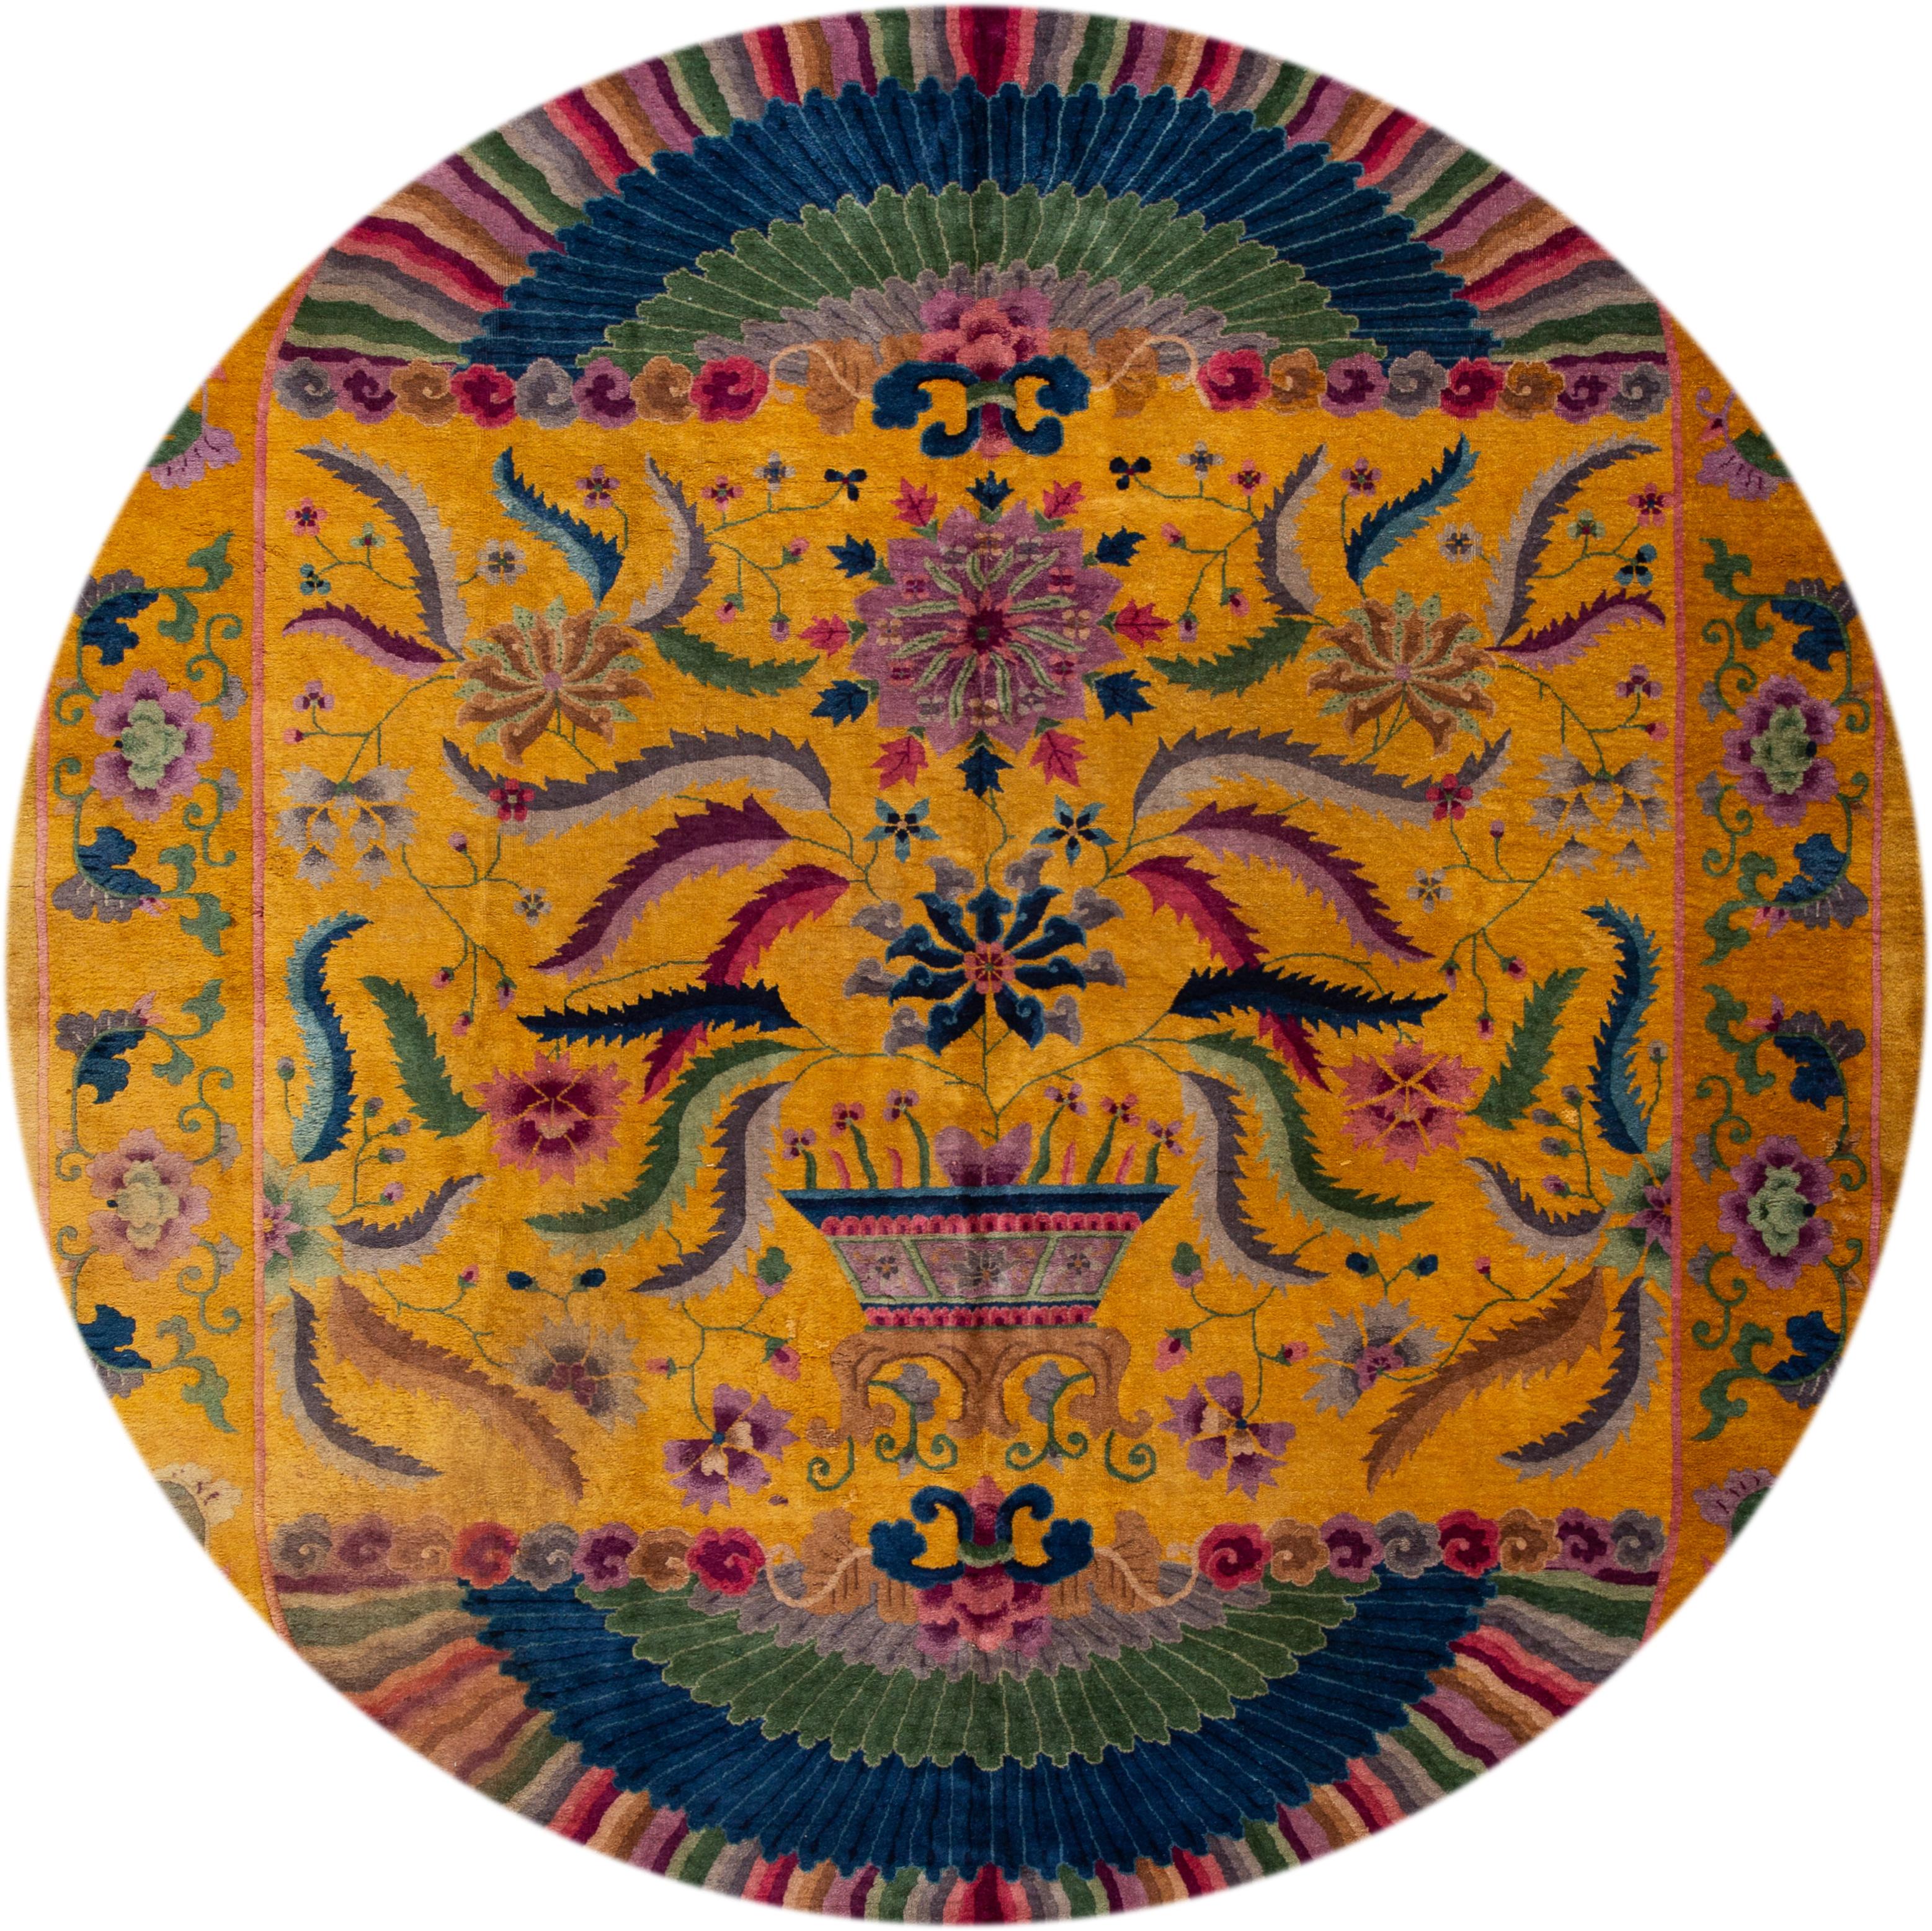 Schöner antiker chinesischer Art-Déco-Teppich um 1920, handgeknüpfte Wolle mit goldgelbem Feld und mehrfarbigen Akzenten in einem Allover-Muster.
Dieser Teppich misst 10' 1